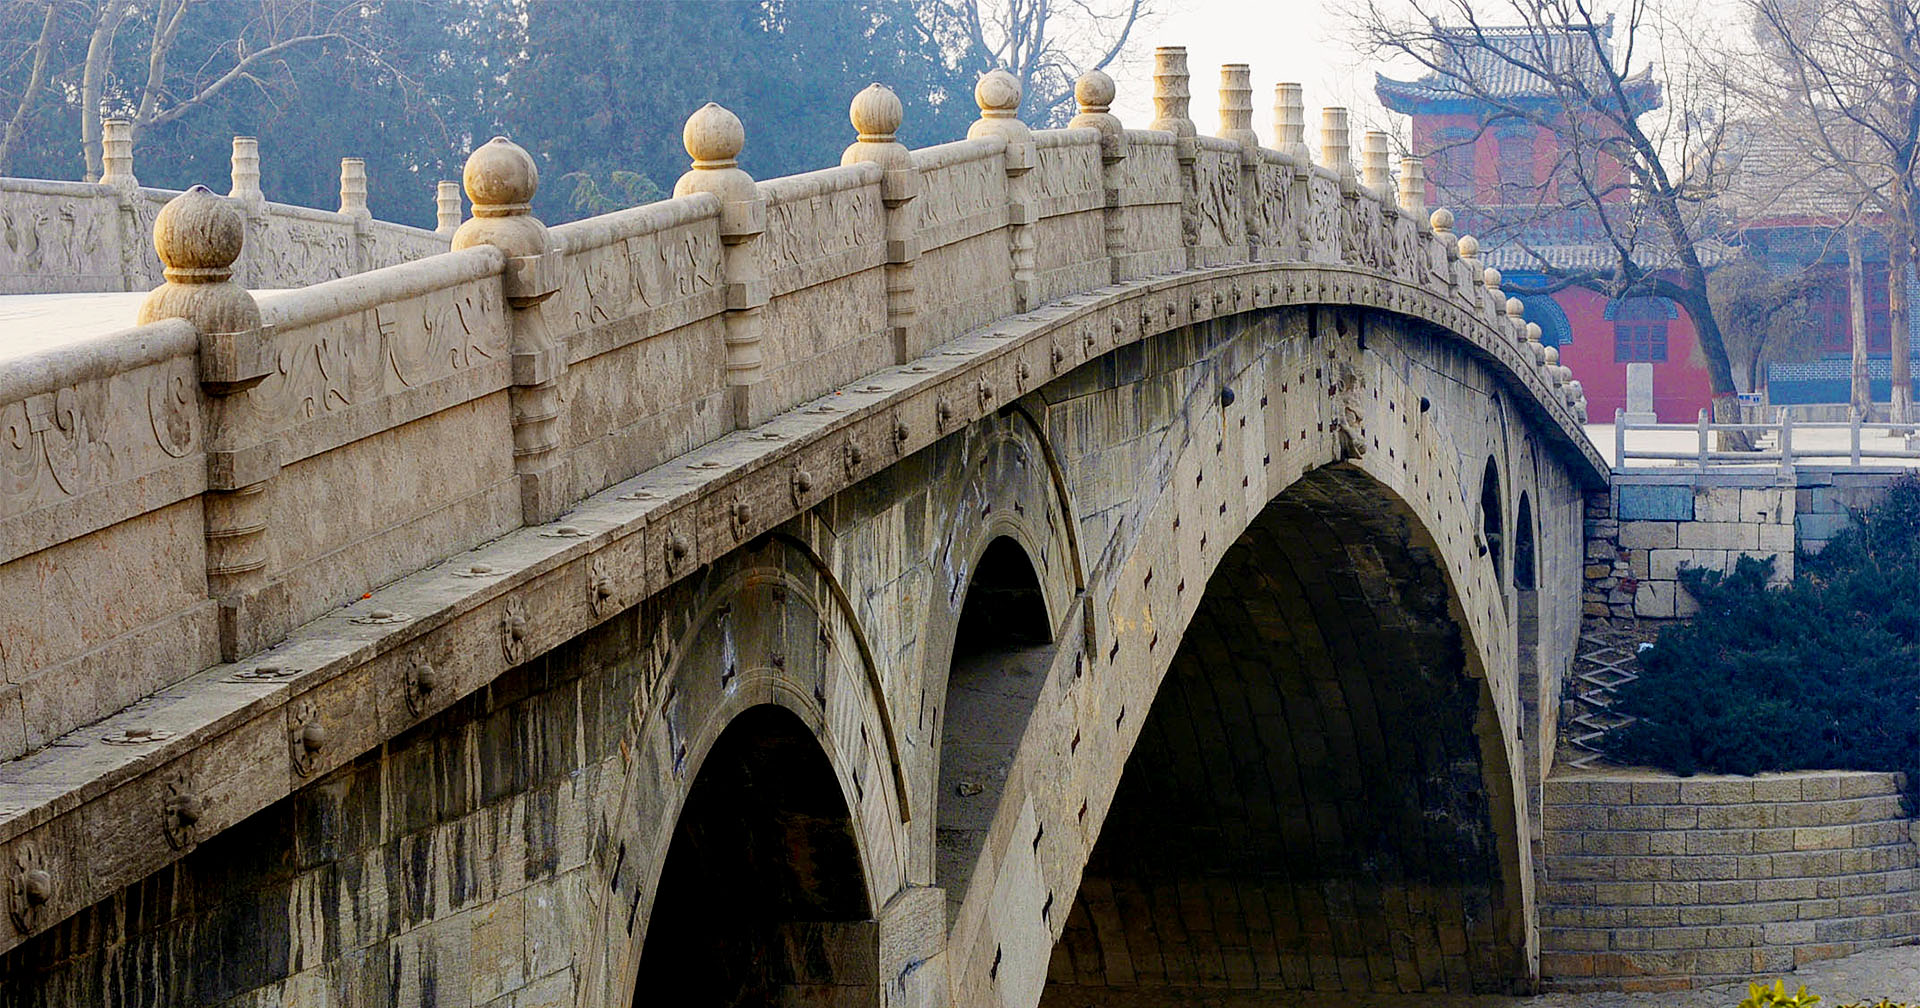 สะพานหินอันจิ 1,400 ปี ผ่านมาแล้ว 10 อุทกภัย 8 สงคราม และแผ่นดินไหวอีกหลายครั้ง